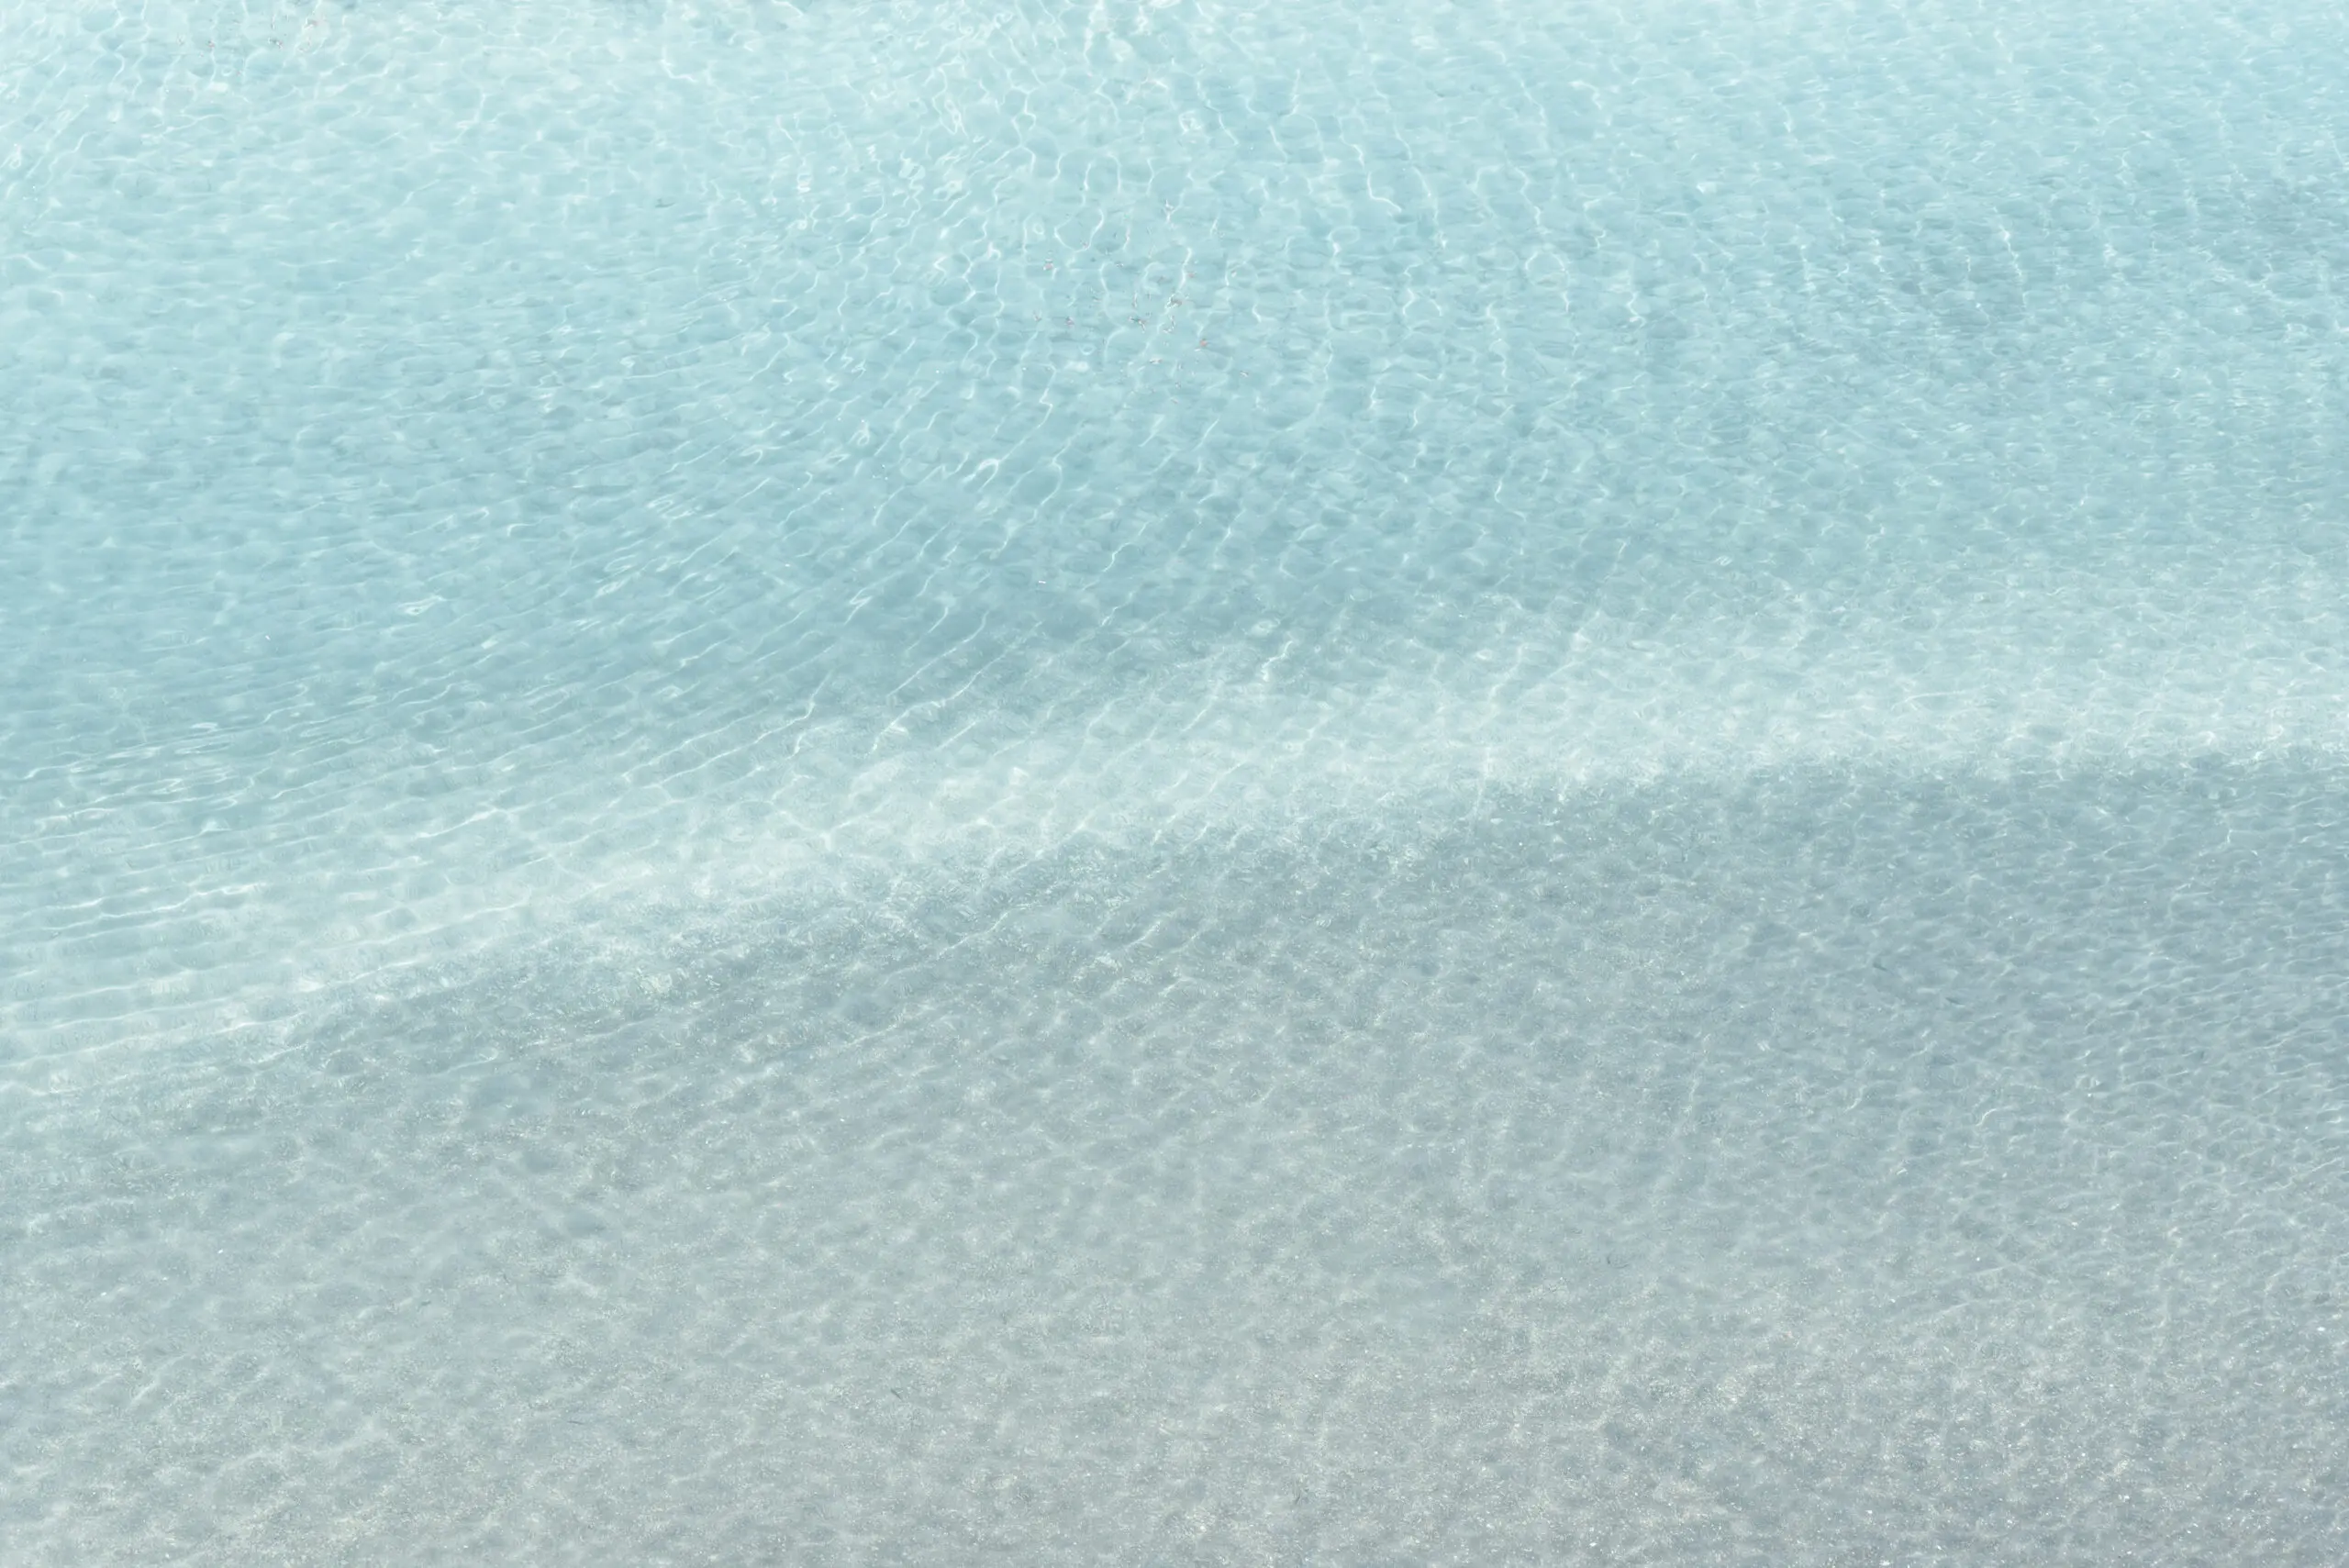 Wandbild (26227) Clear sea water by photolovers präsentiert: Wasser